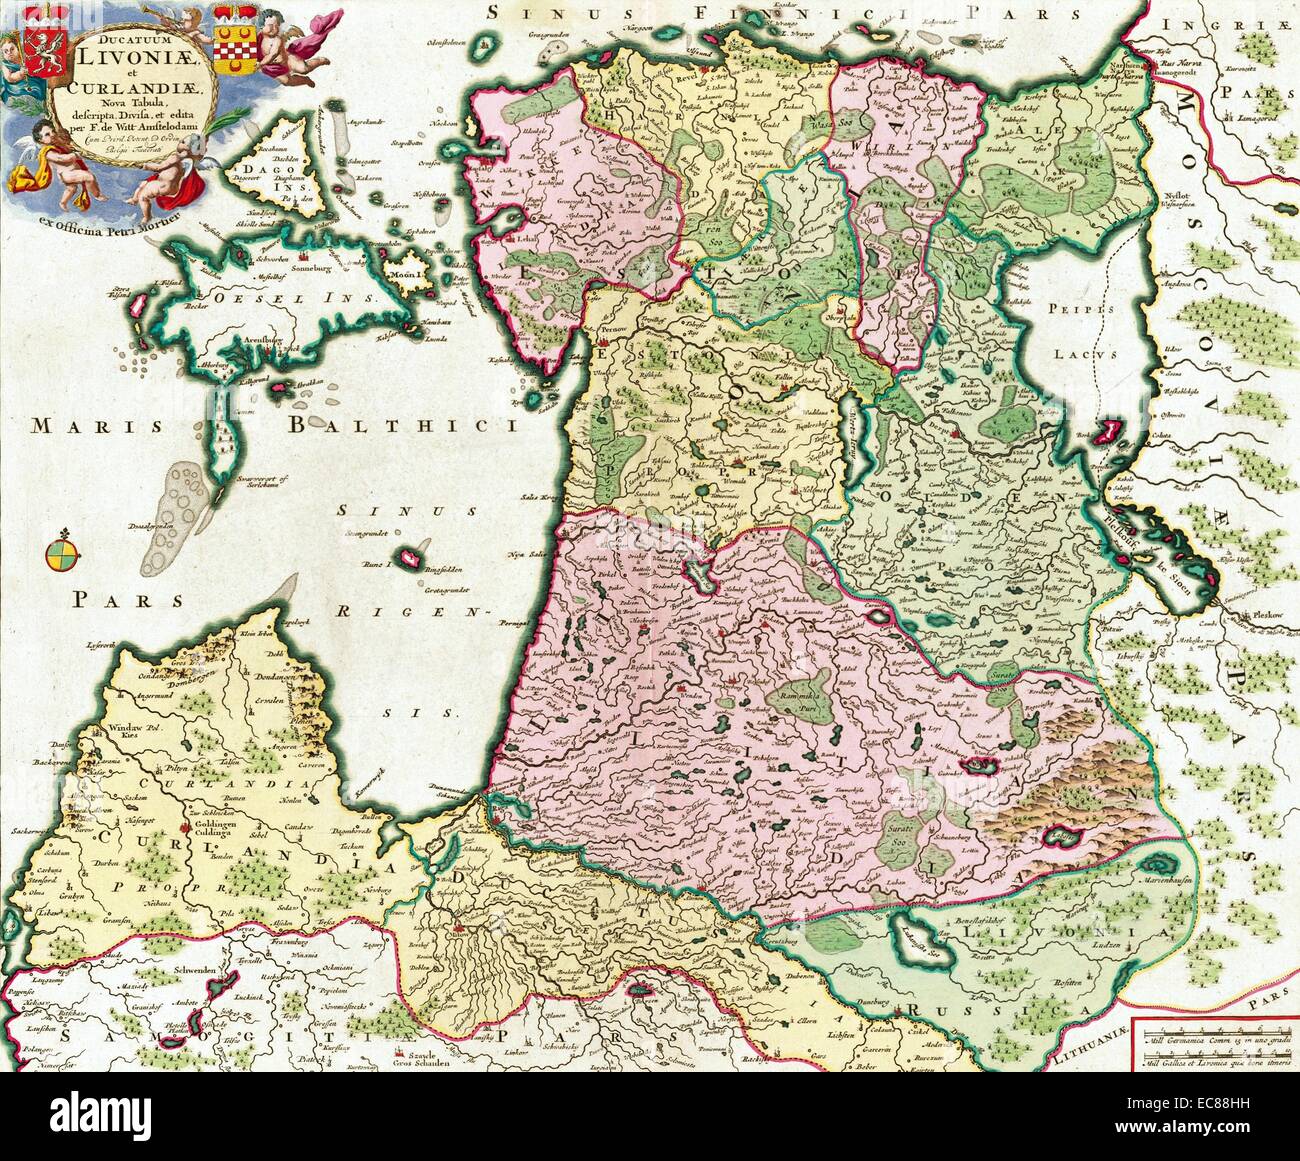 Ducatuum Livoniae et Curlandiae Nova Tabula par Frederik de wit. La carte montre la région de la mer Baltique et des régions voisines. En date du 18e siècle Banque D'Images